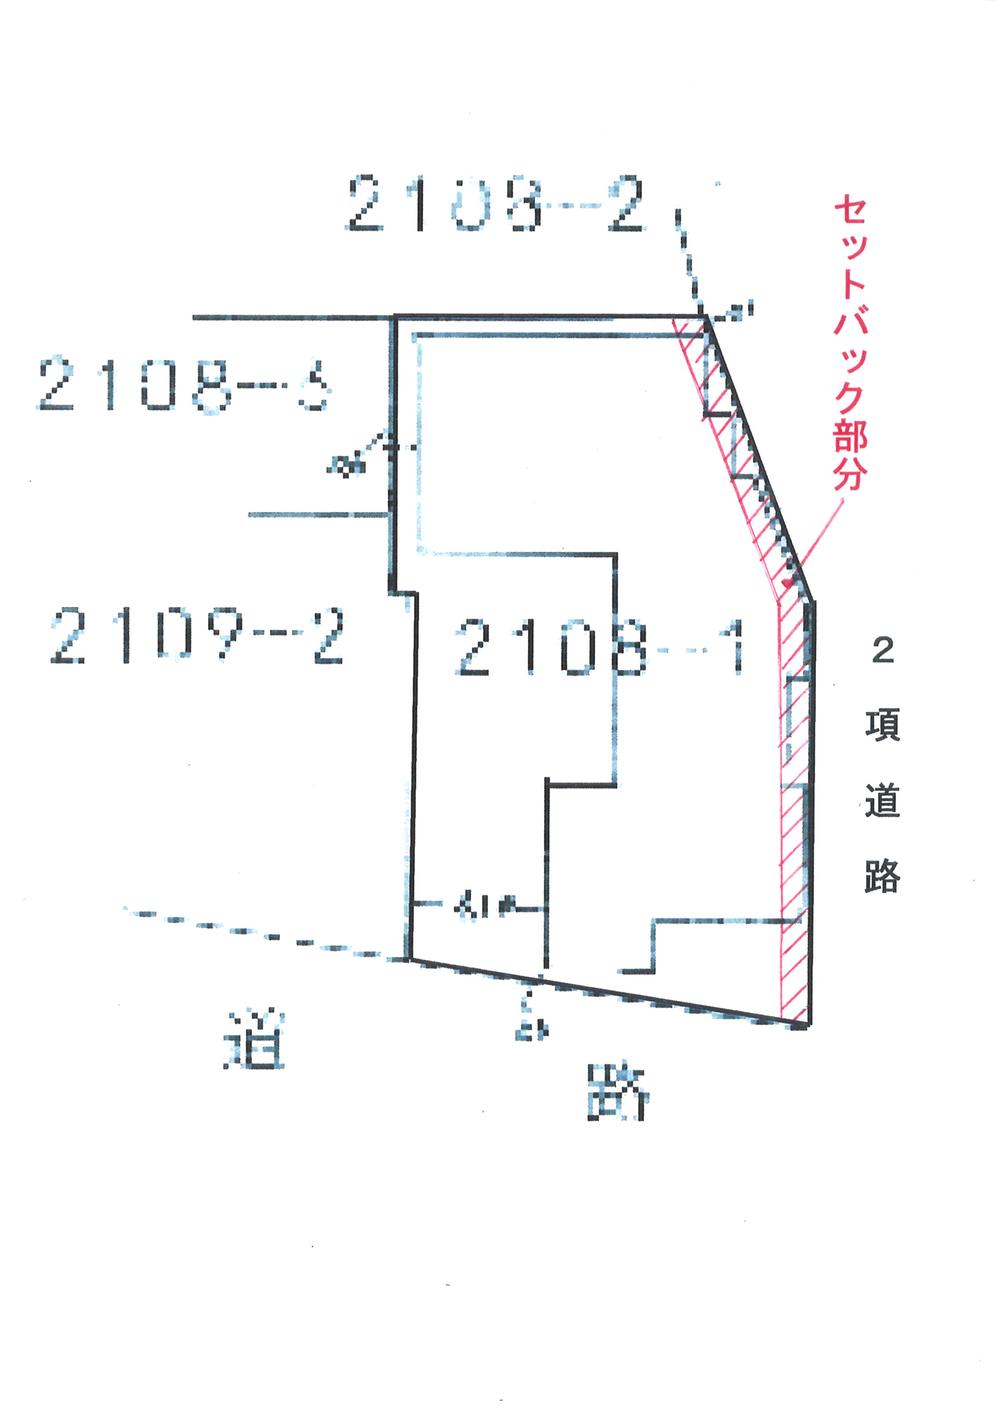 Compartment figure. 5.9 million yen, 5DK + 3S (storeroom), Land area 198.32 sq m , Building area 164.41 sq m